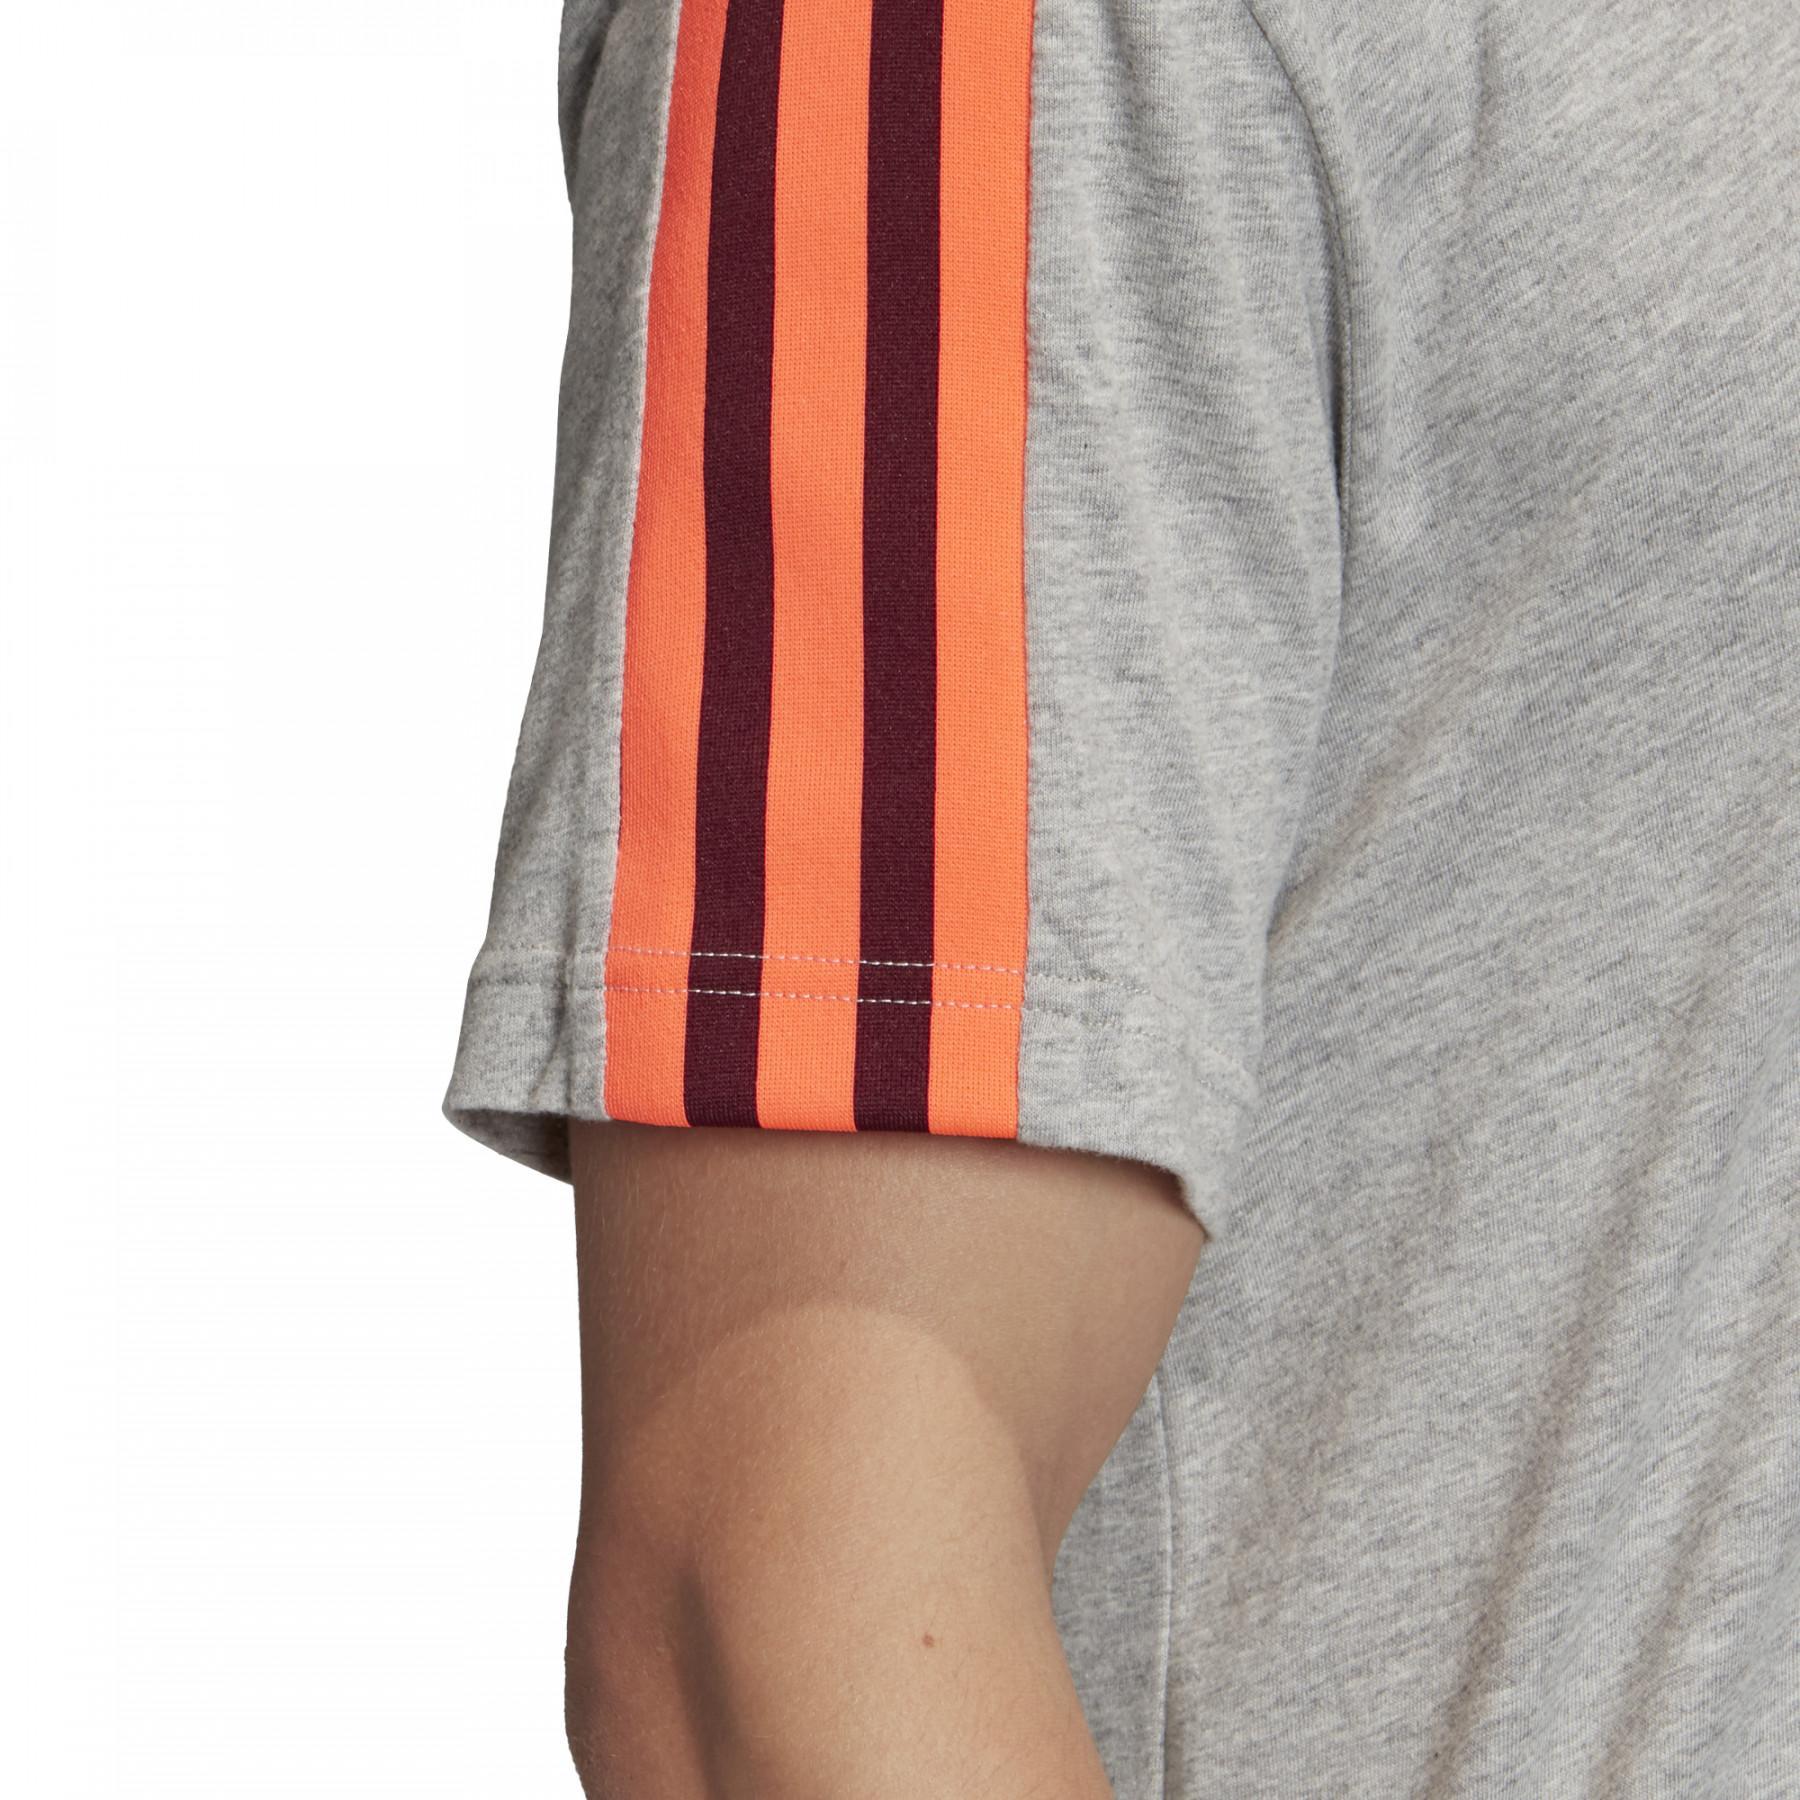 Camiseta adidas 3-Stripes